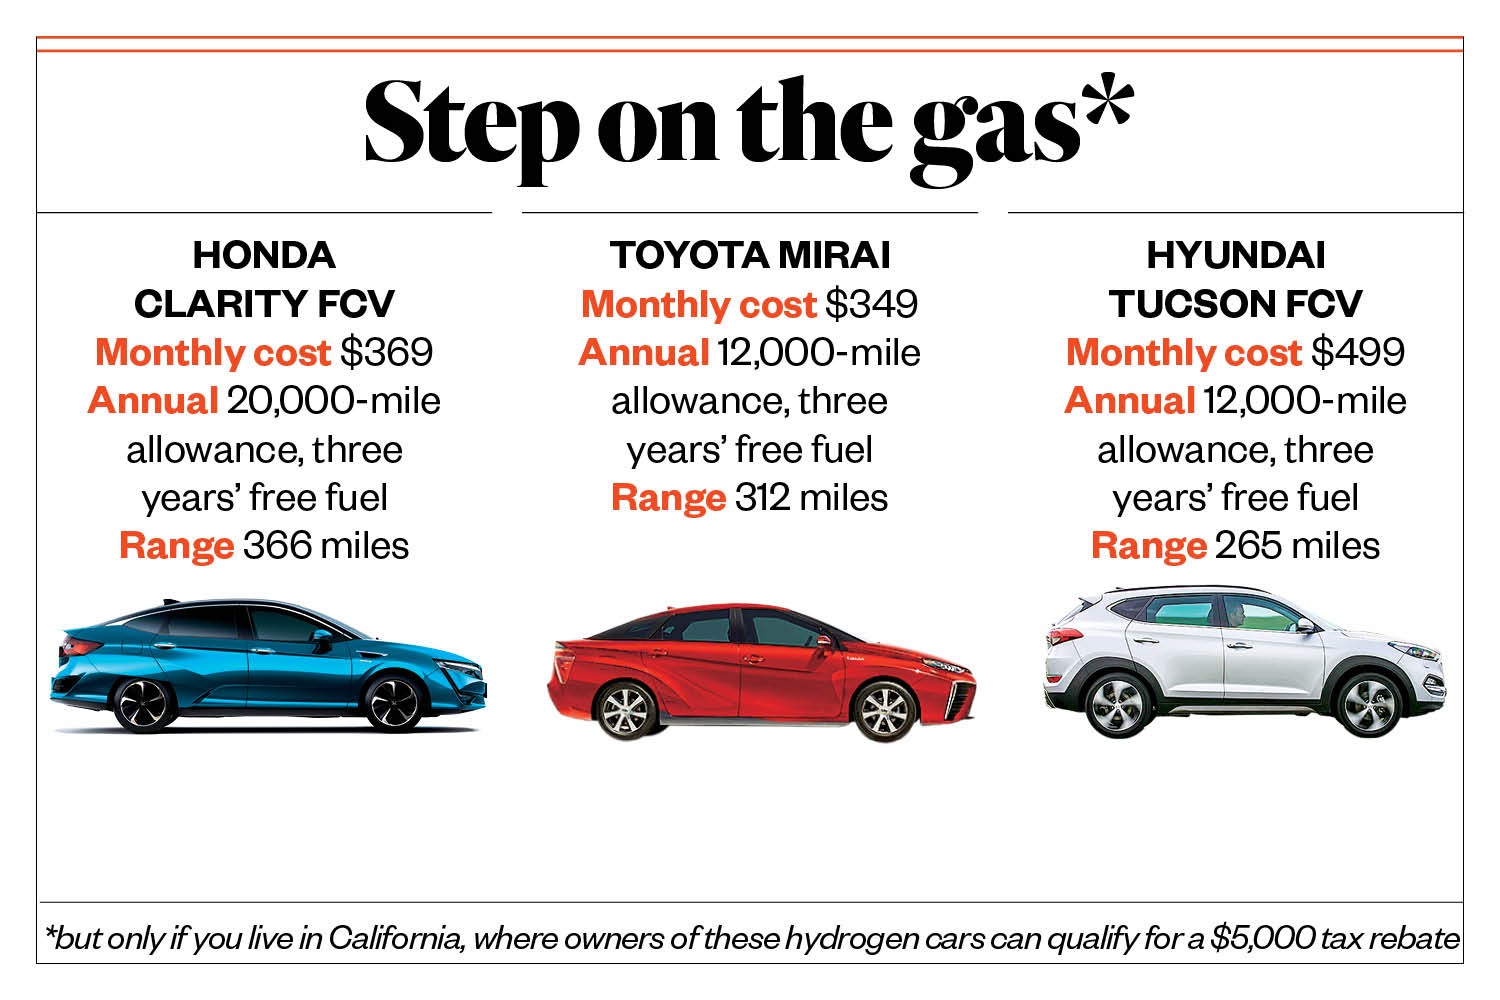 Honda Clarity vs Toyota Mirai vs Hyundai Tucson FCV